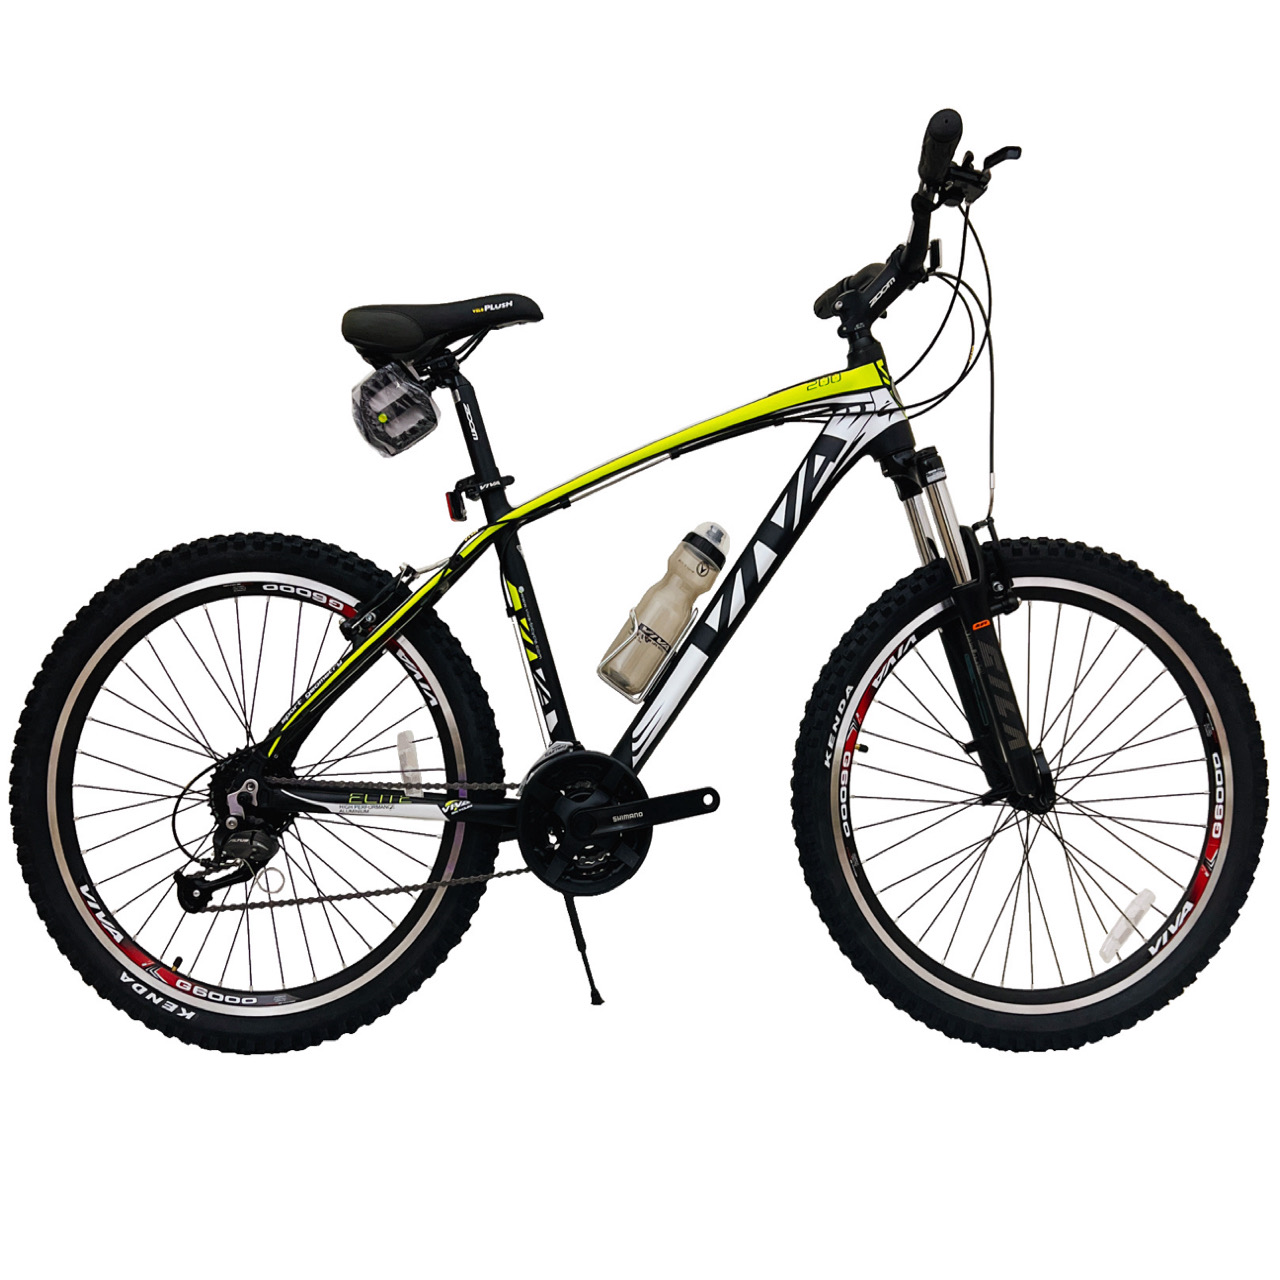 نکته خرید - قیمت روز دوچرخه کوهستان ویوا مدل ELITE کد 200 سایز طوقه 26 خرید